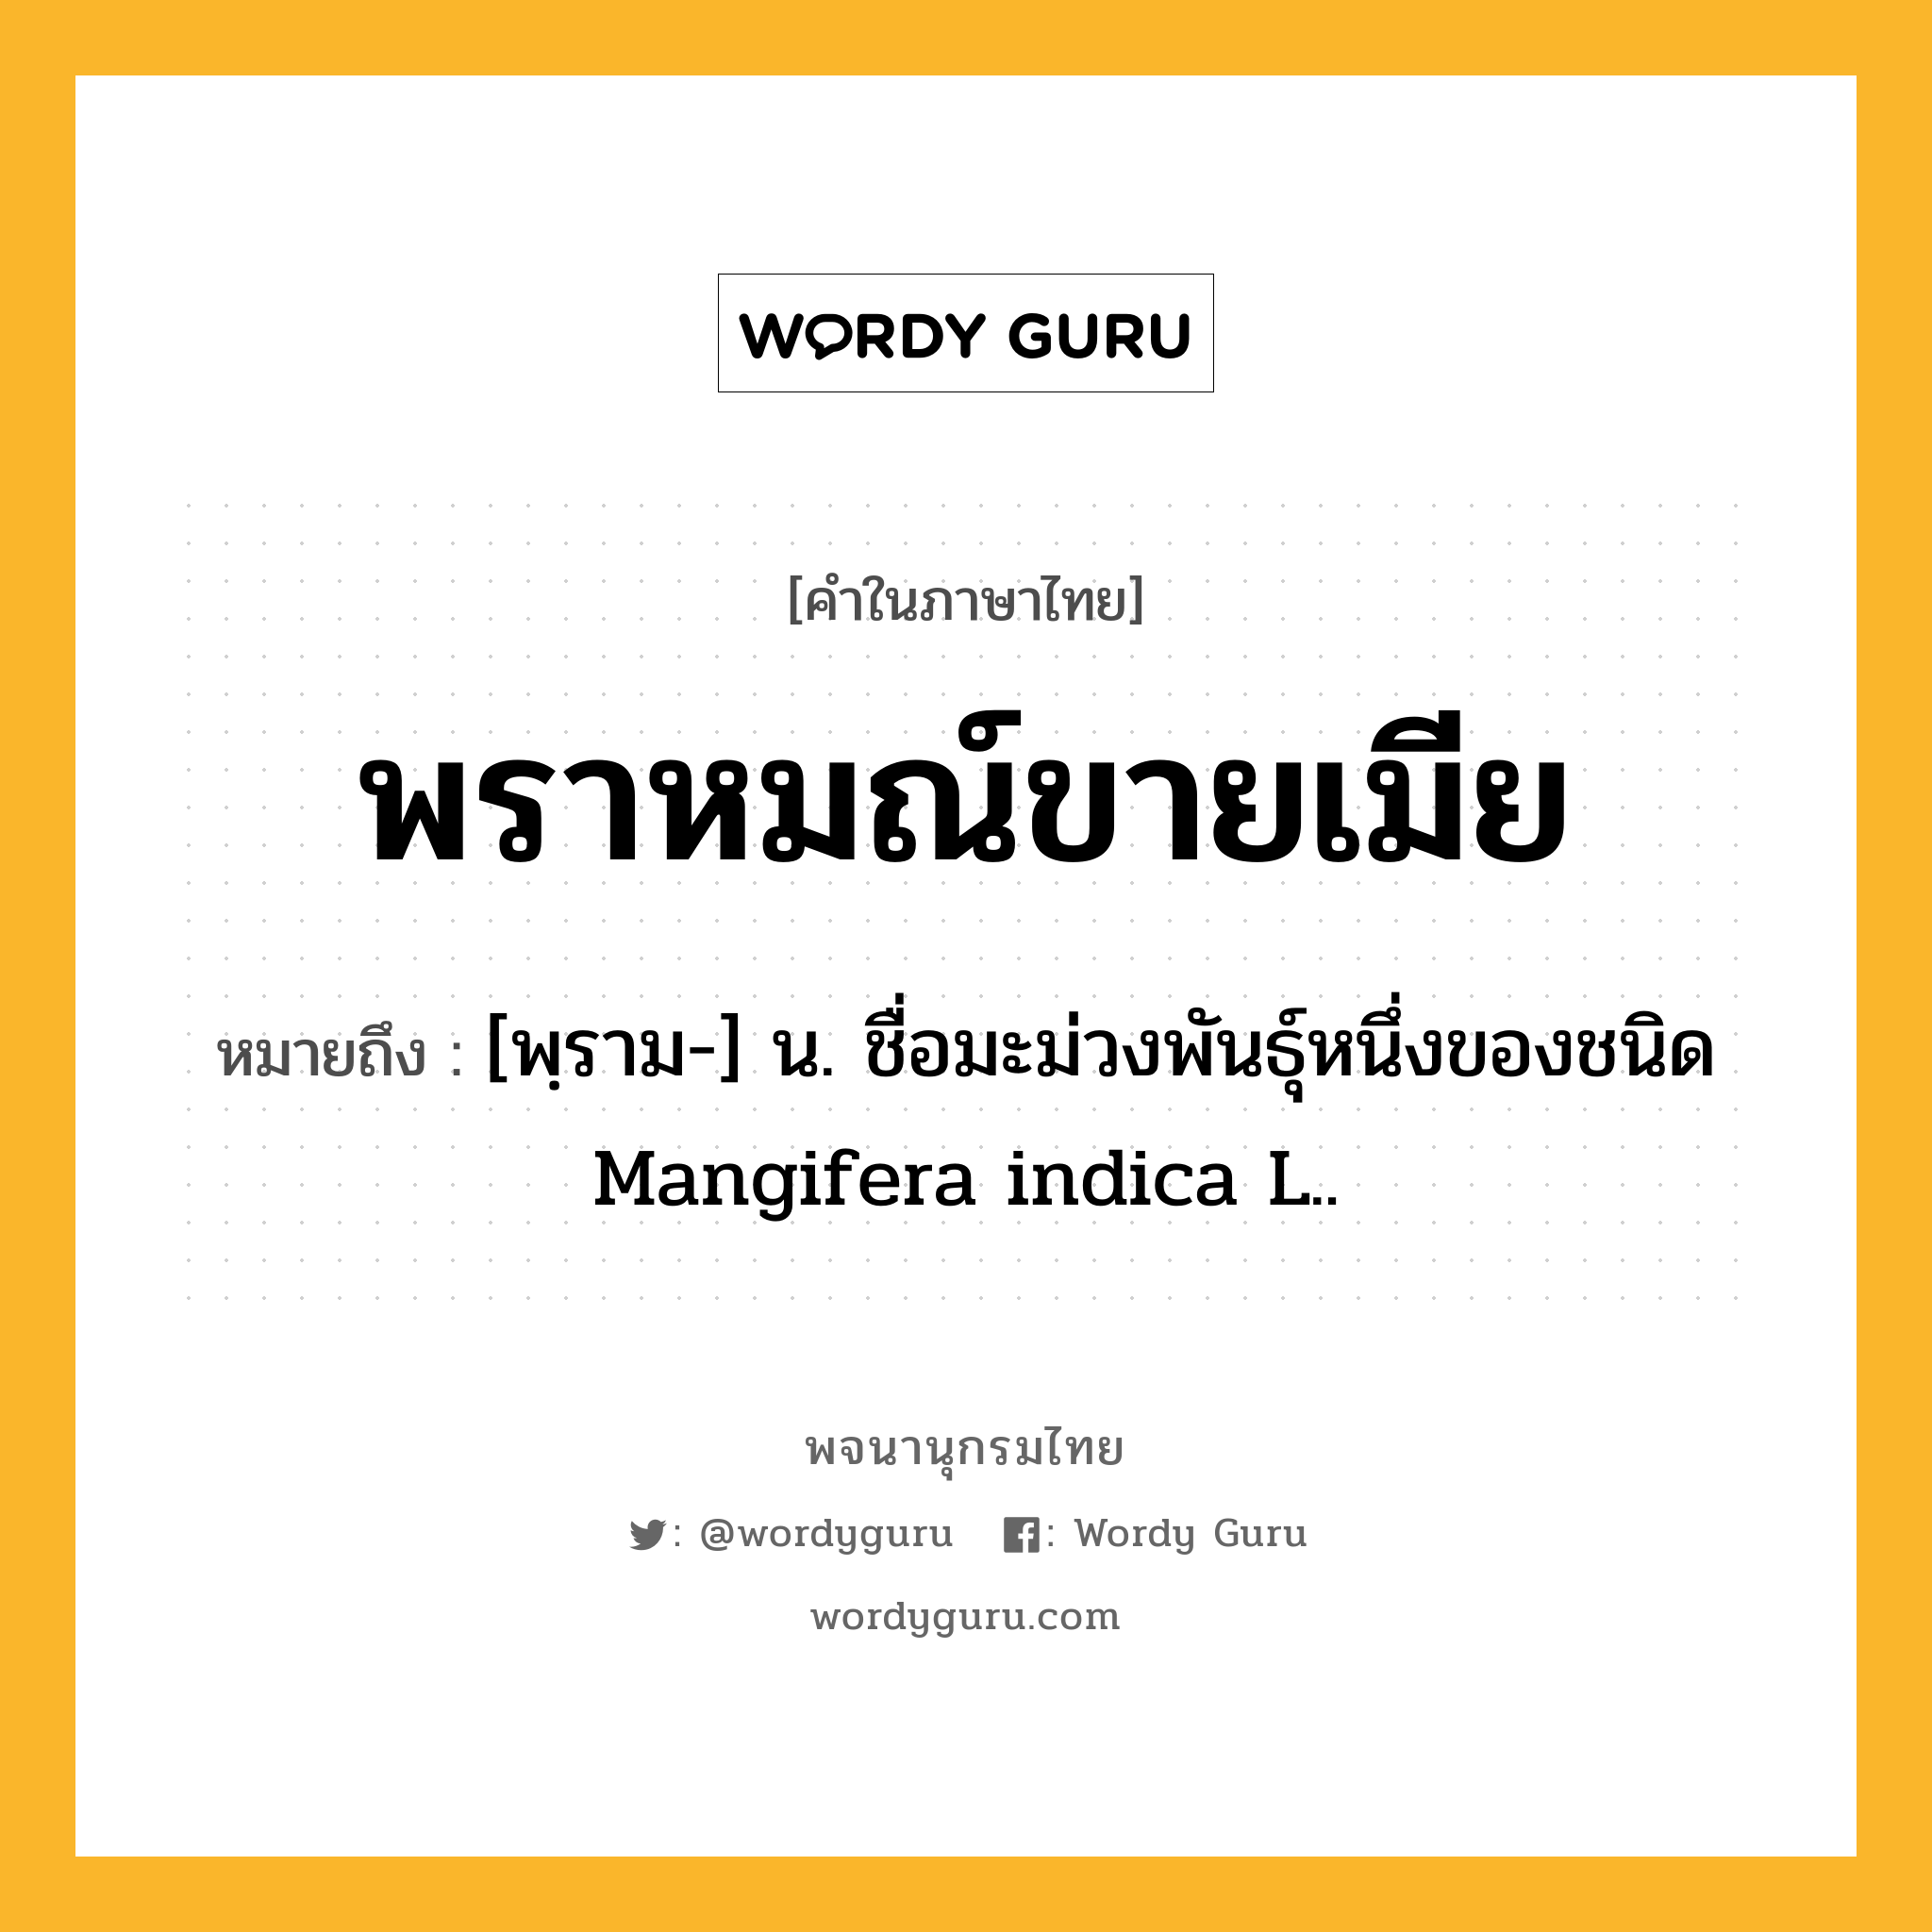 พราหมณ์ขายเมีย หมายถึงอะไร?, คำในภาษาไทย พราหมณ์ขายเมีย หมายถึง [พฺราม-] น. ชื่อมะม่วงพันธุ์หนึ่งของชนิด Mangifera indica L..